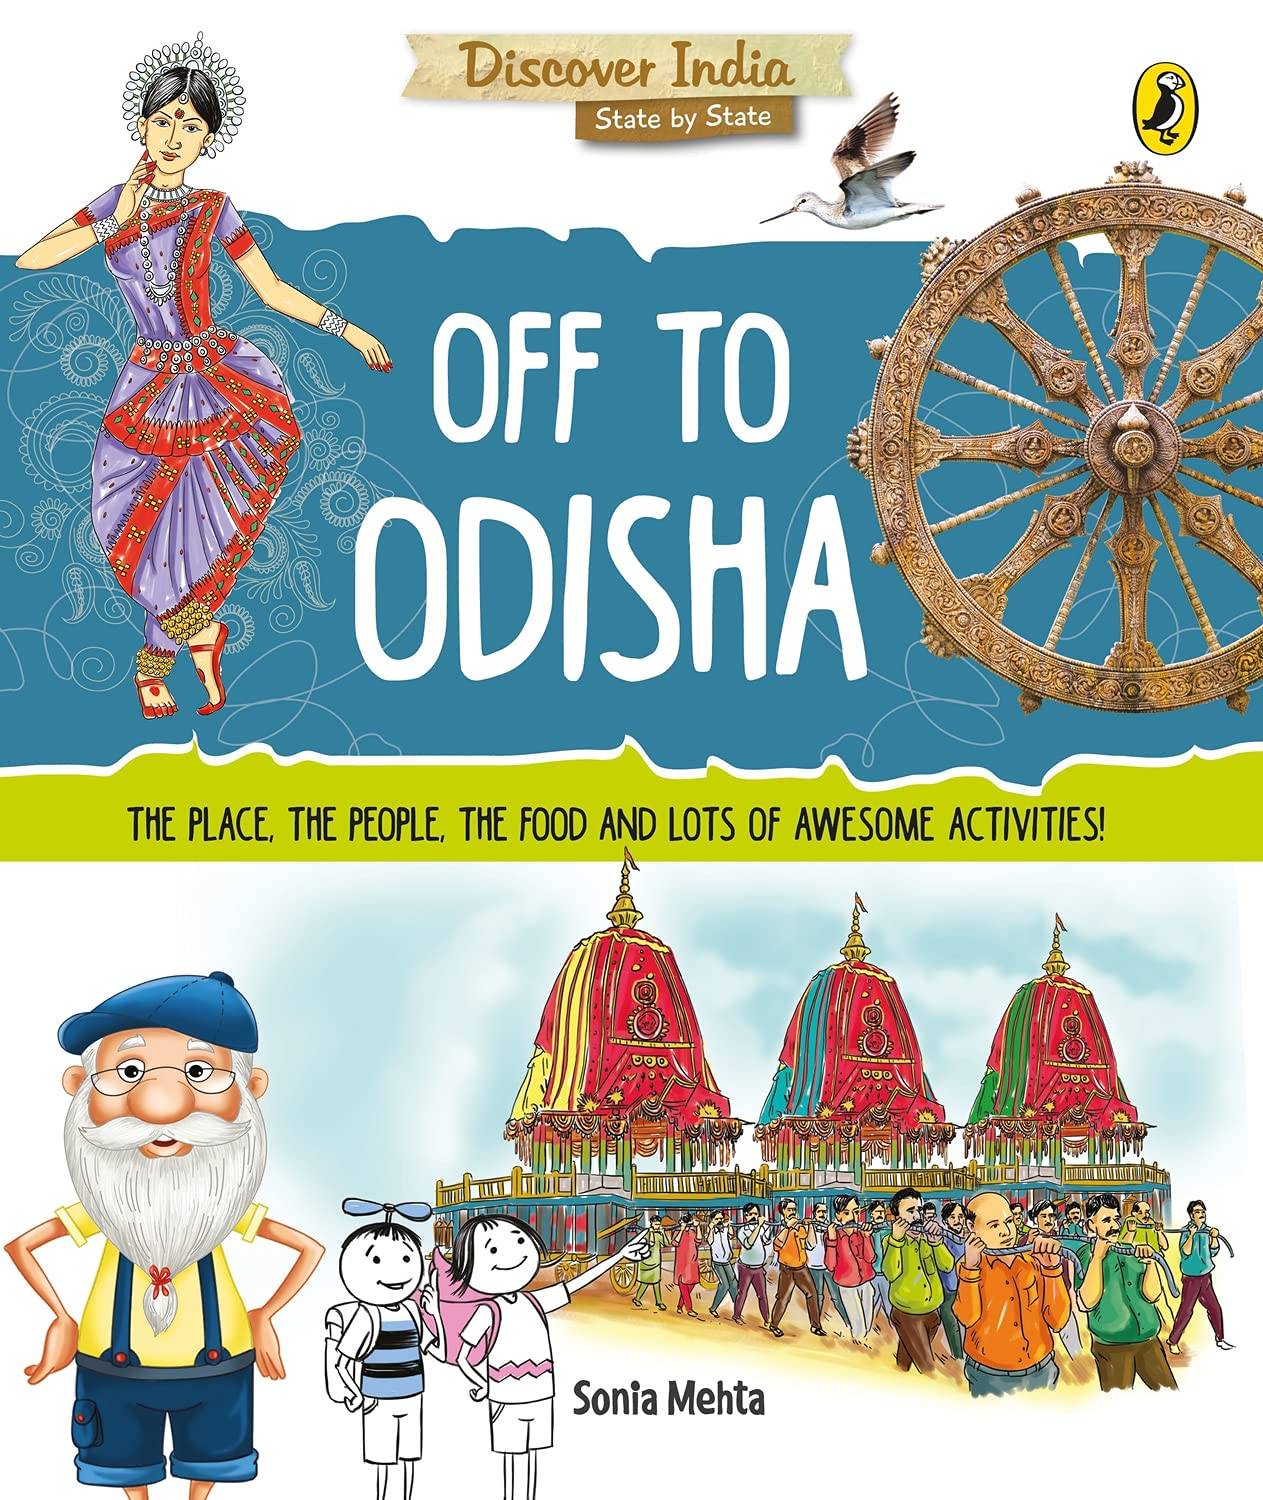 IMG : Discover India- Off to Odisha